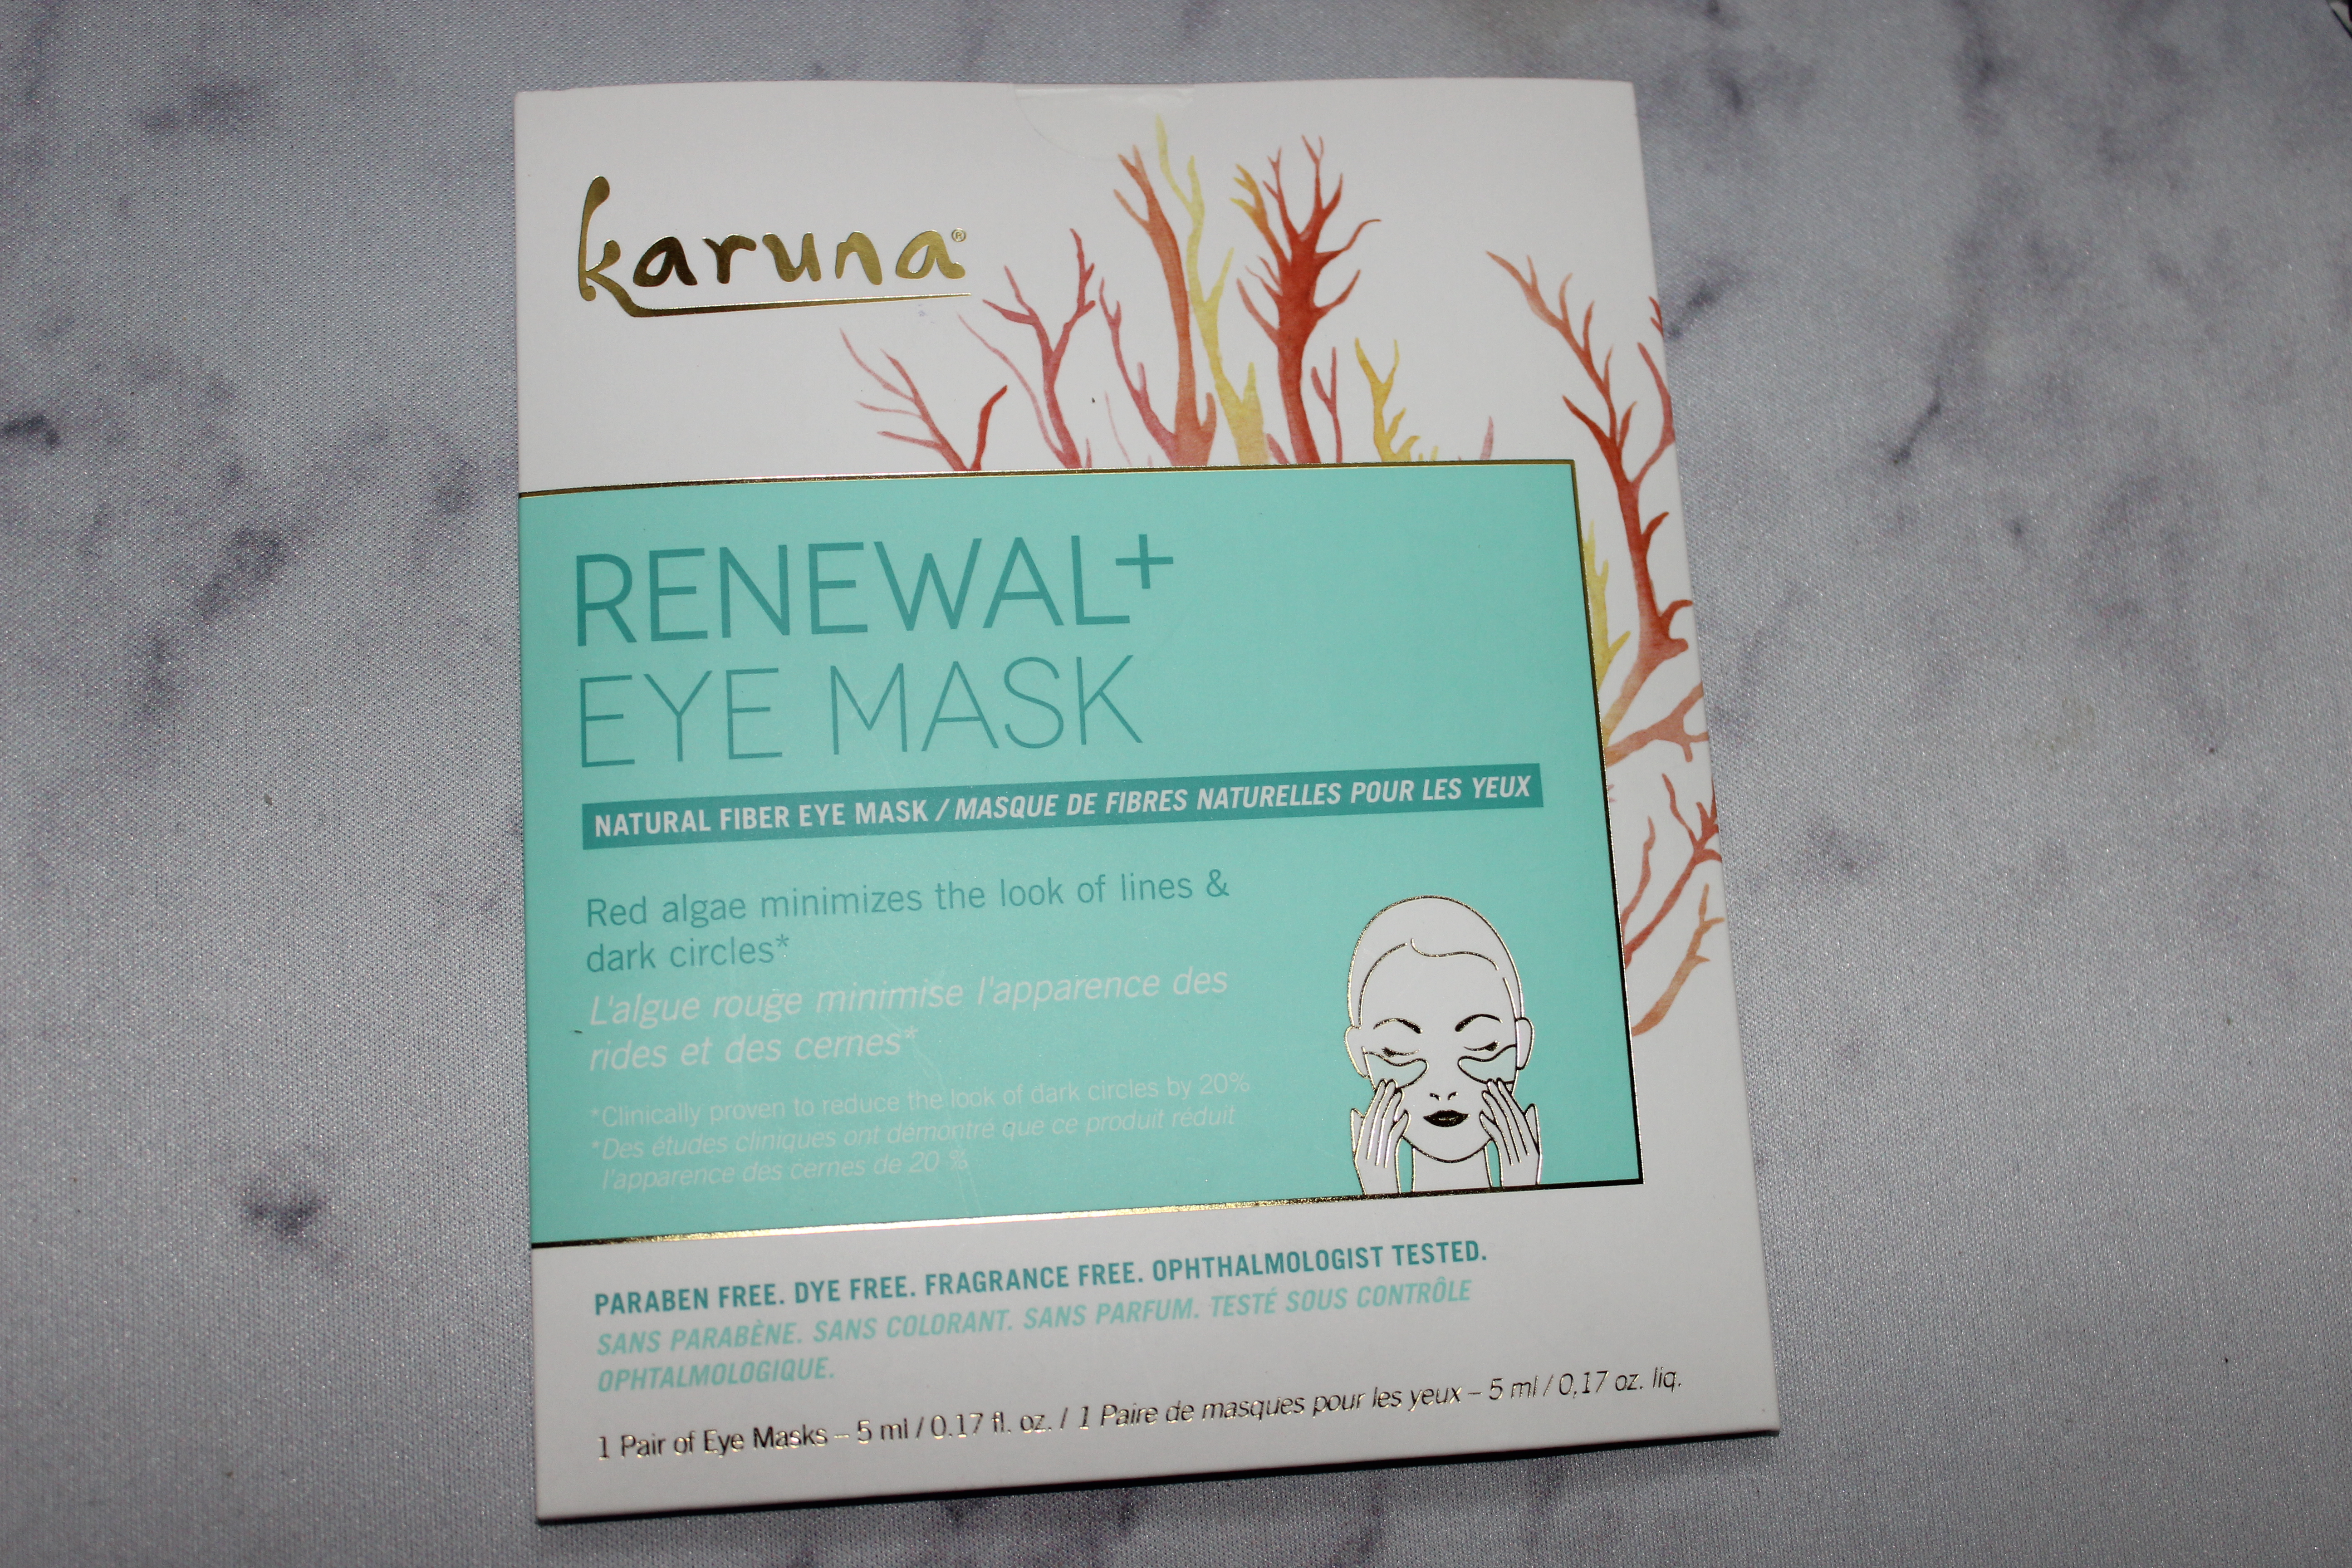 Karuna Renewal + Eye Mask!